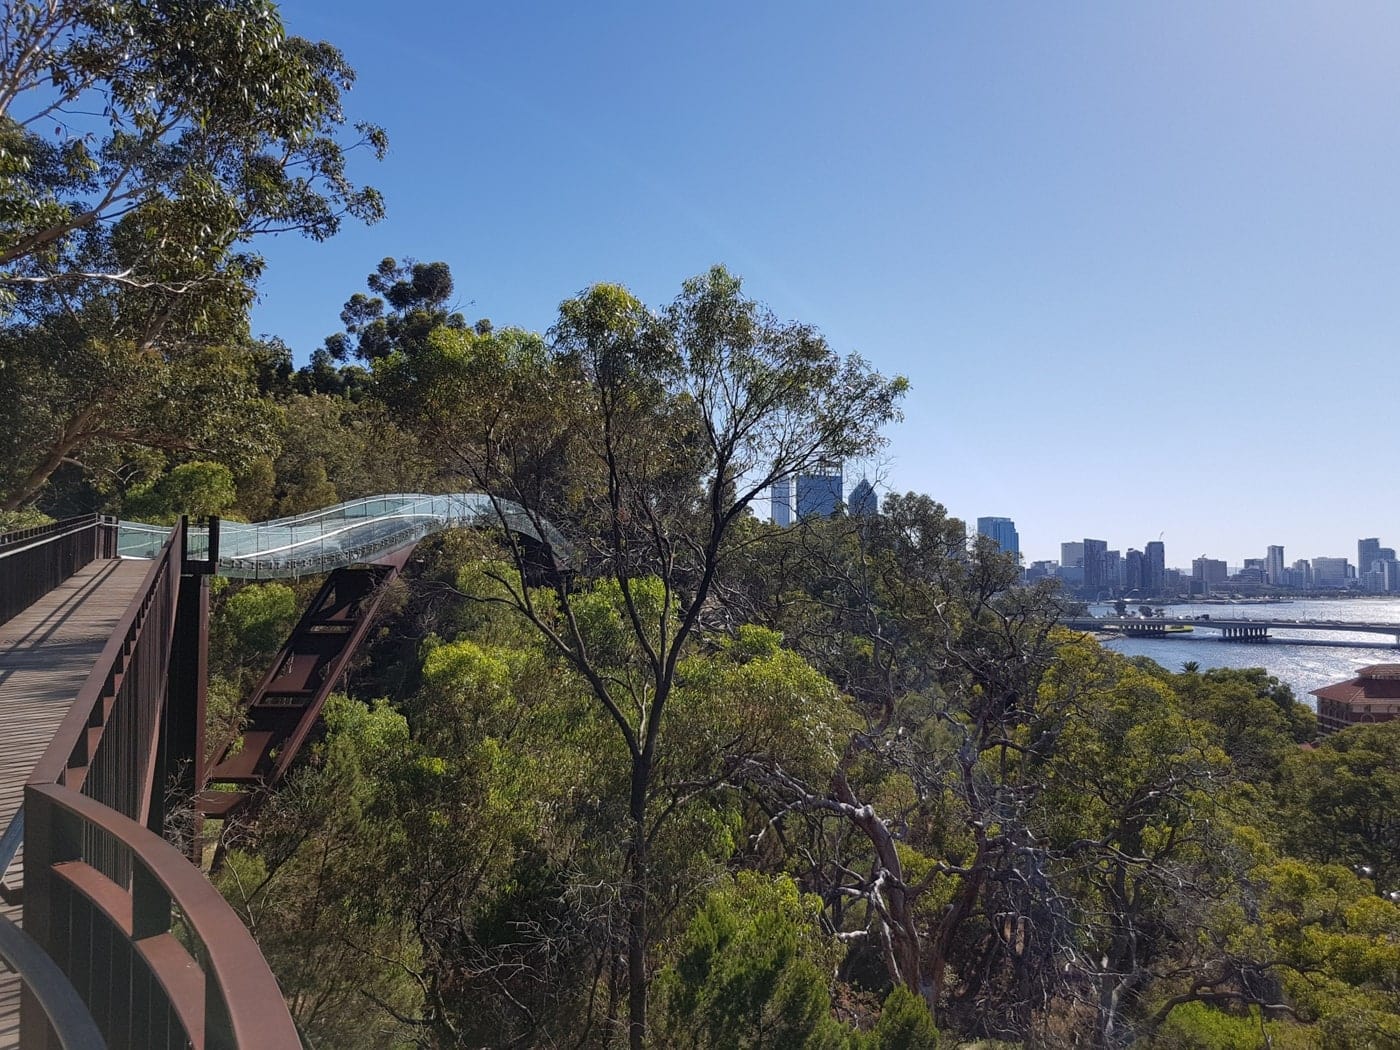 Kings Park & Botanic Garden in Perth